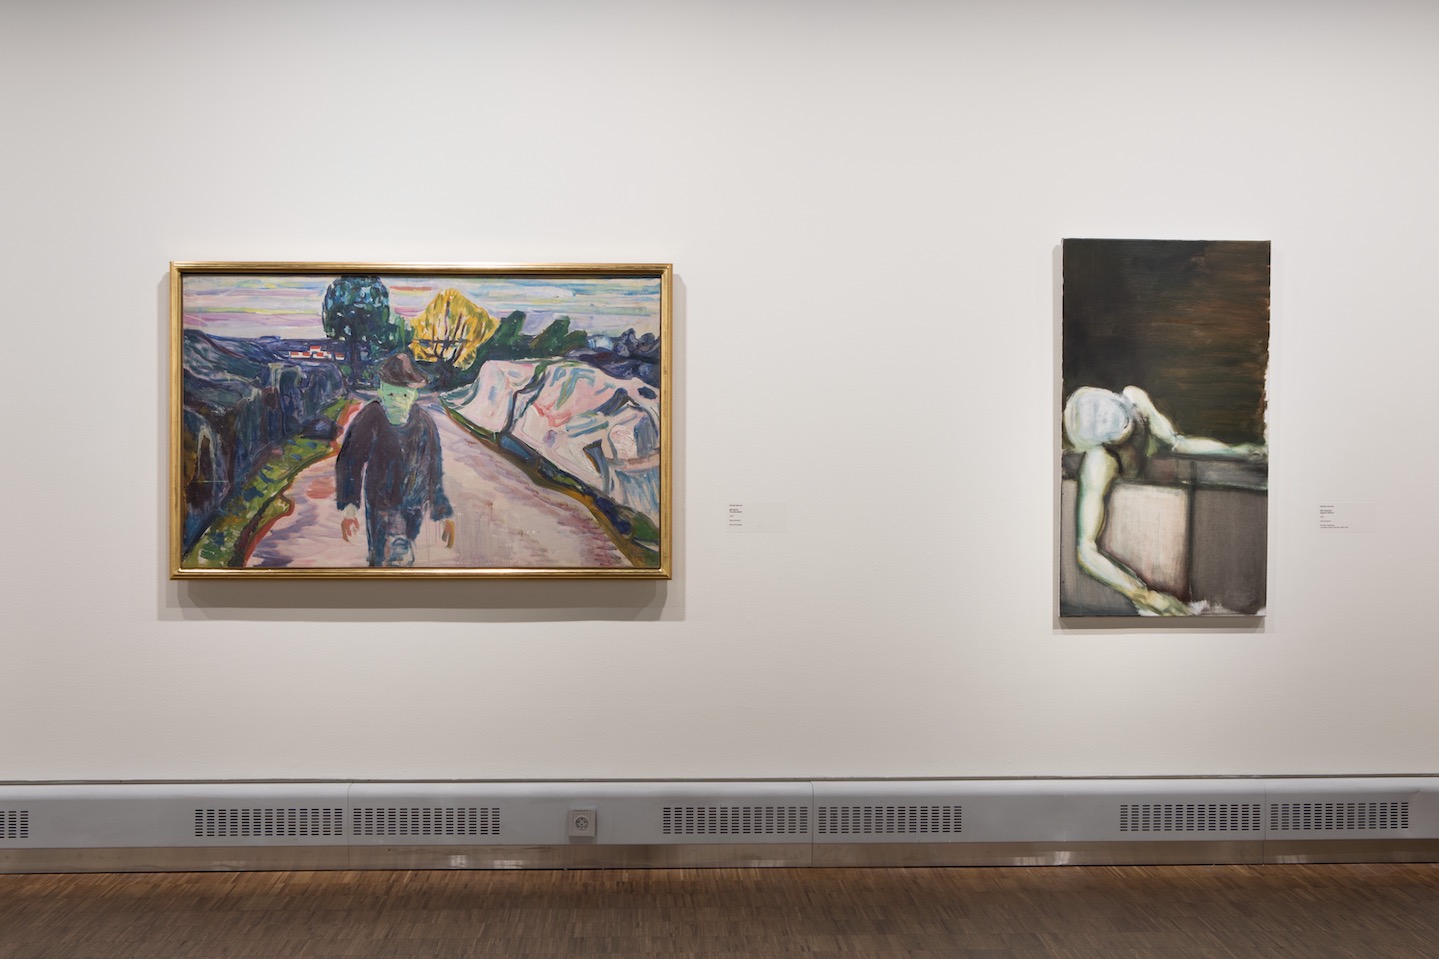 <i>Moonrise.</i> Marlene Dumas & Edvard Munch, Munch museet, Oslo, 2018-2019